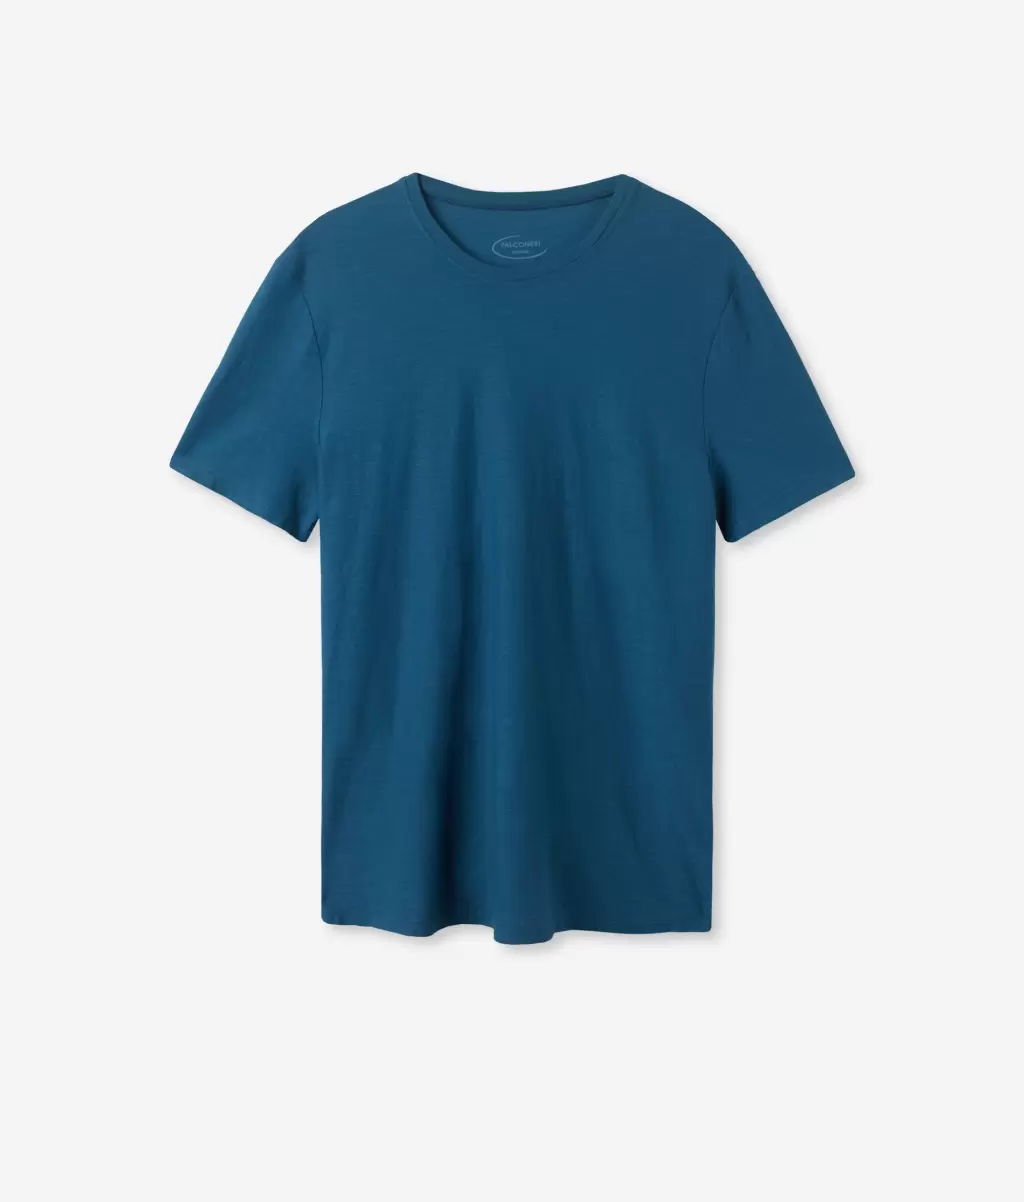 Falconeri Koszulka Z Bawełny Twist Blue T-Shirty I Koszulki Polo Mężczyzna - 4